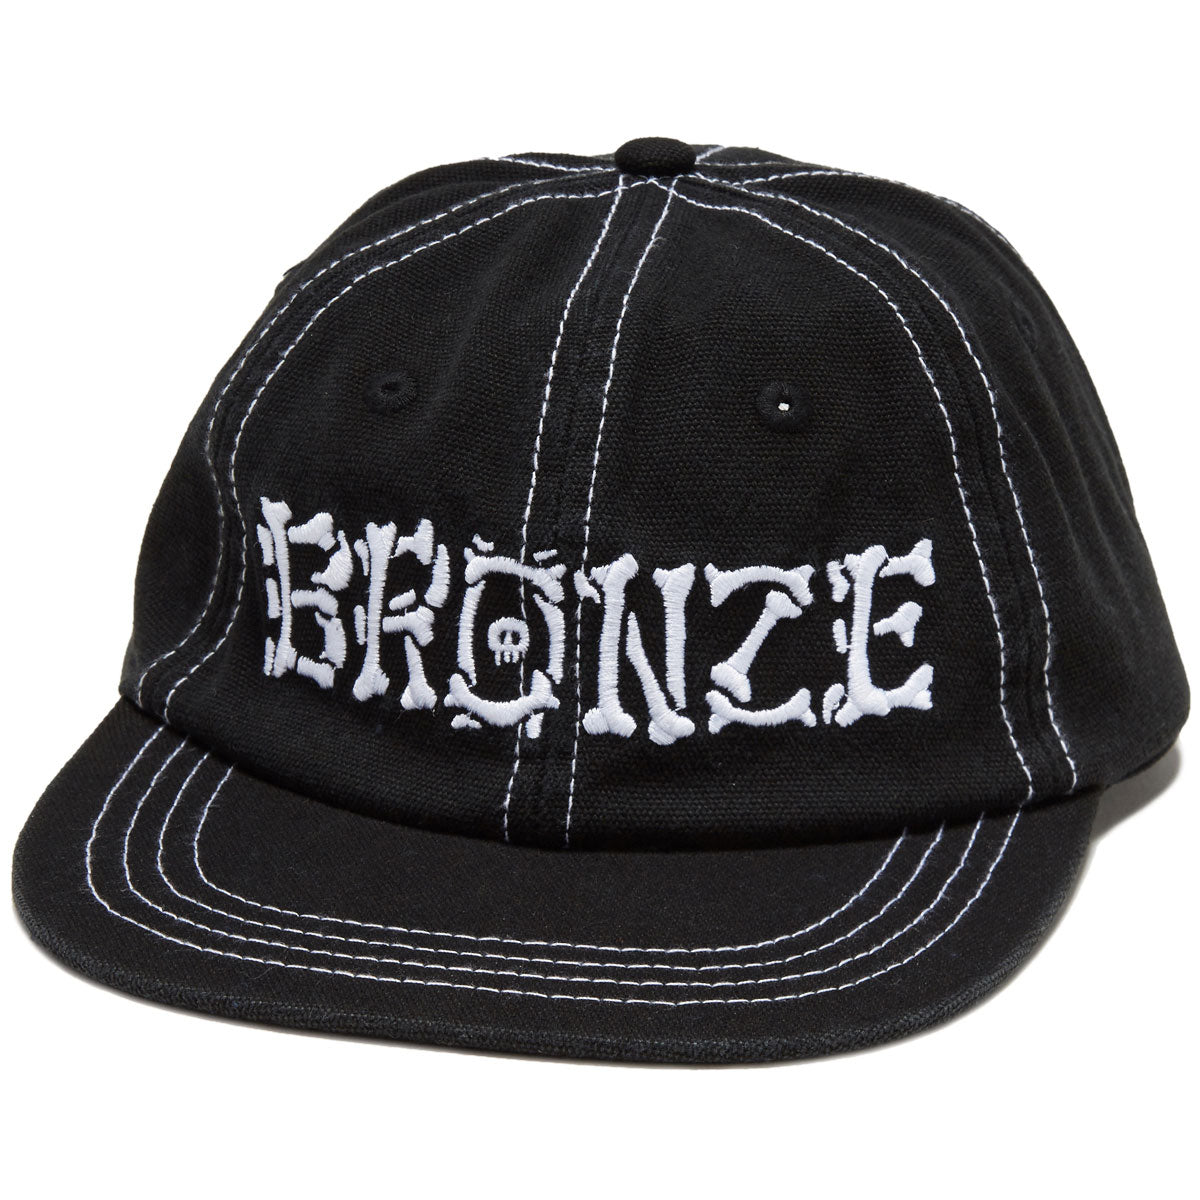 Bronze 56k Bones Hat - Black image 1